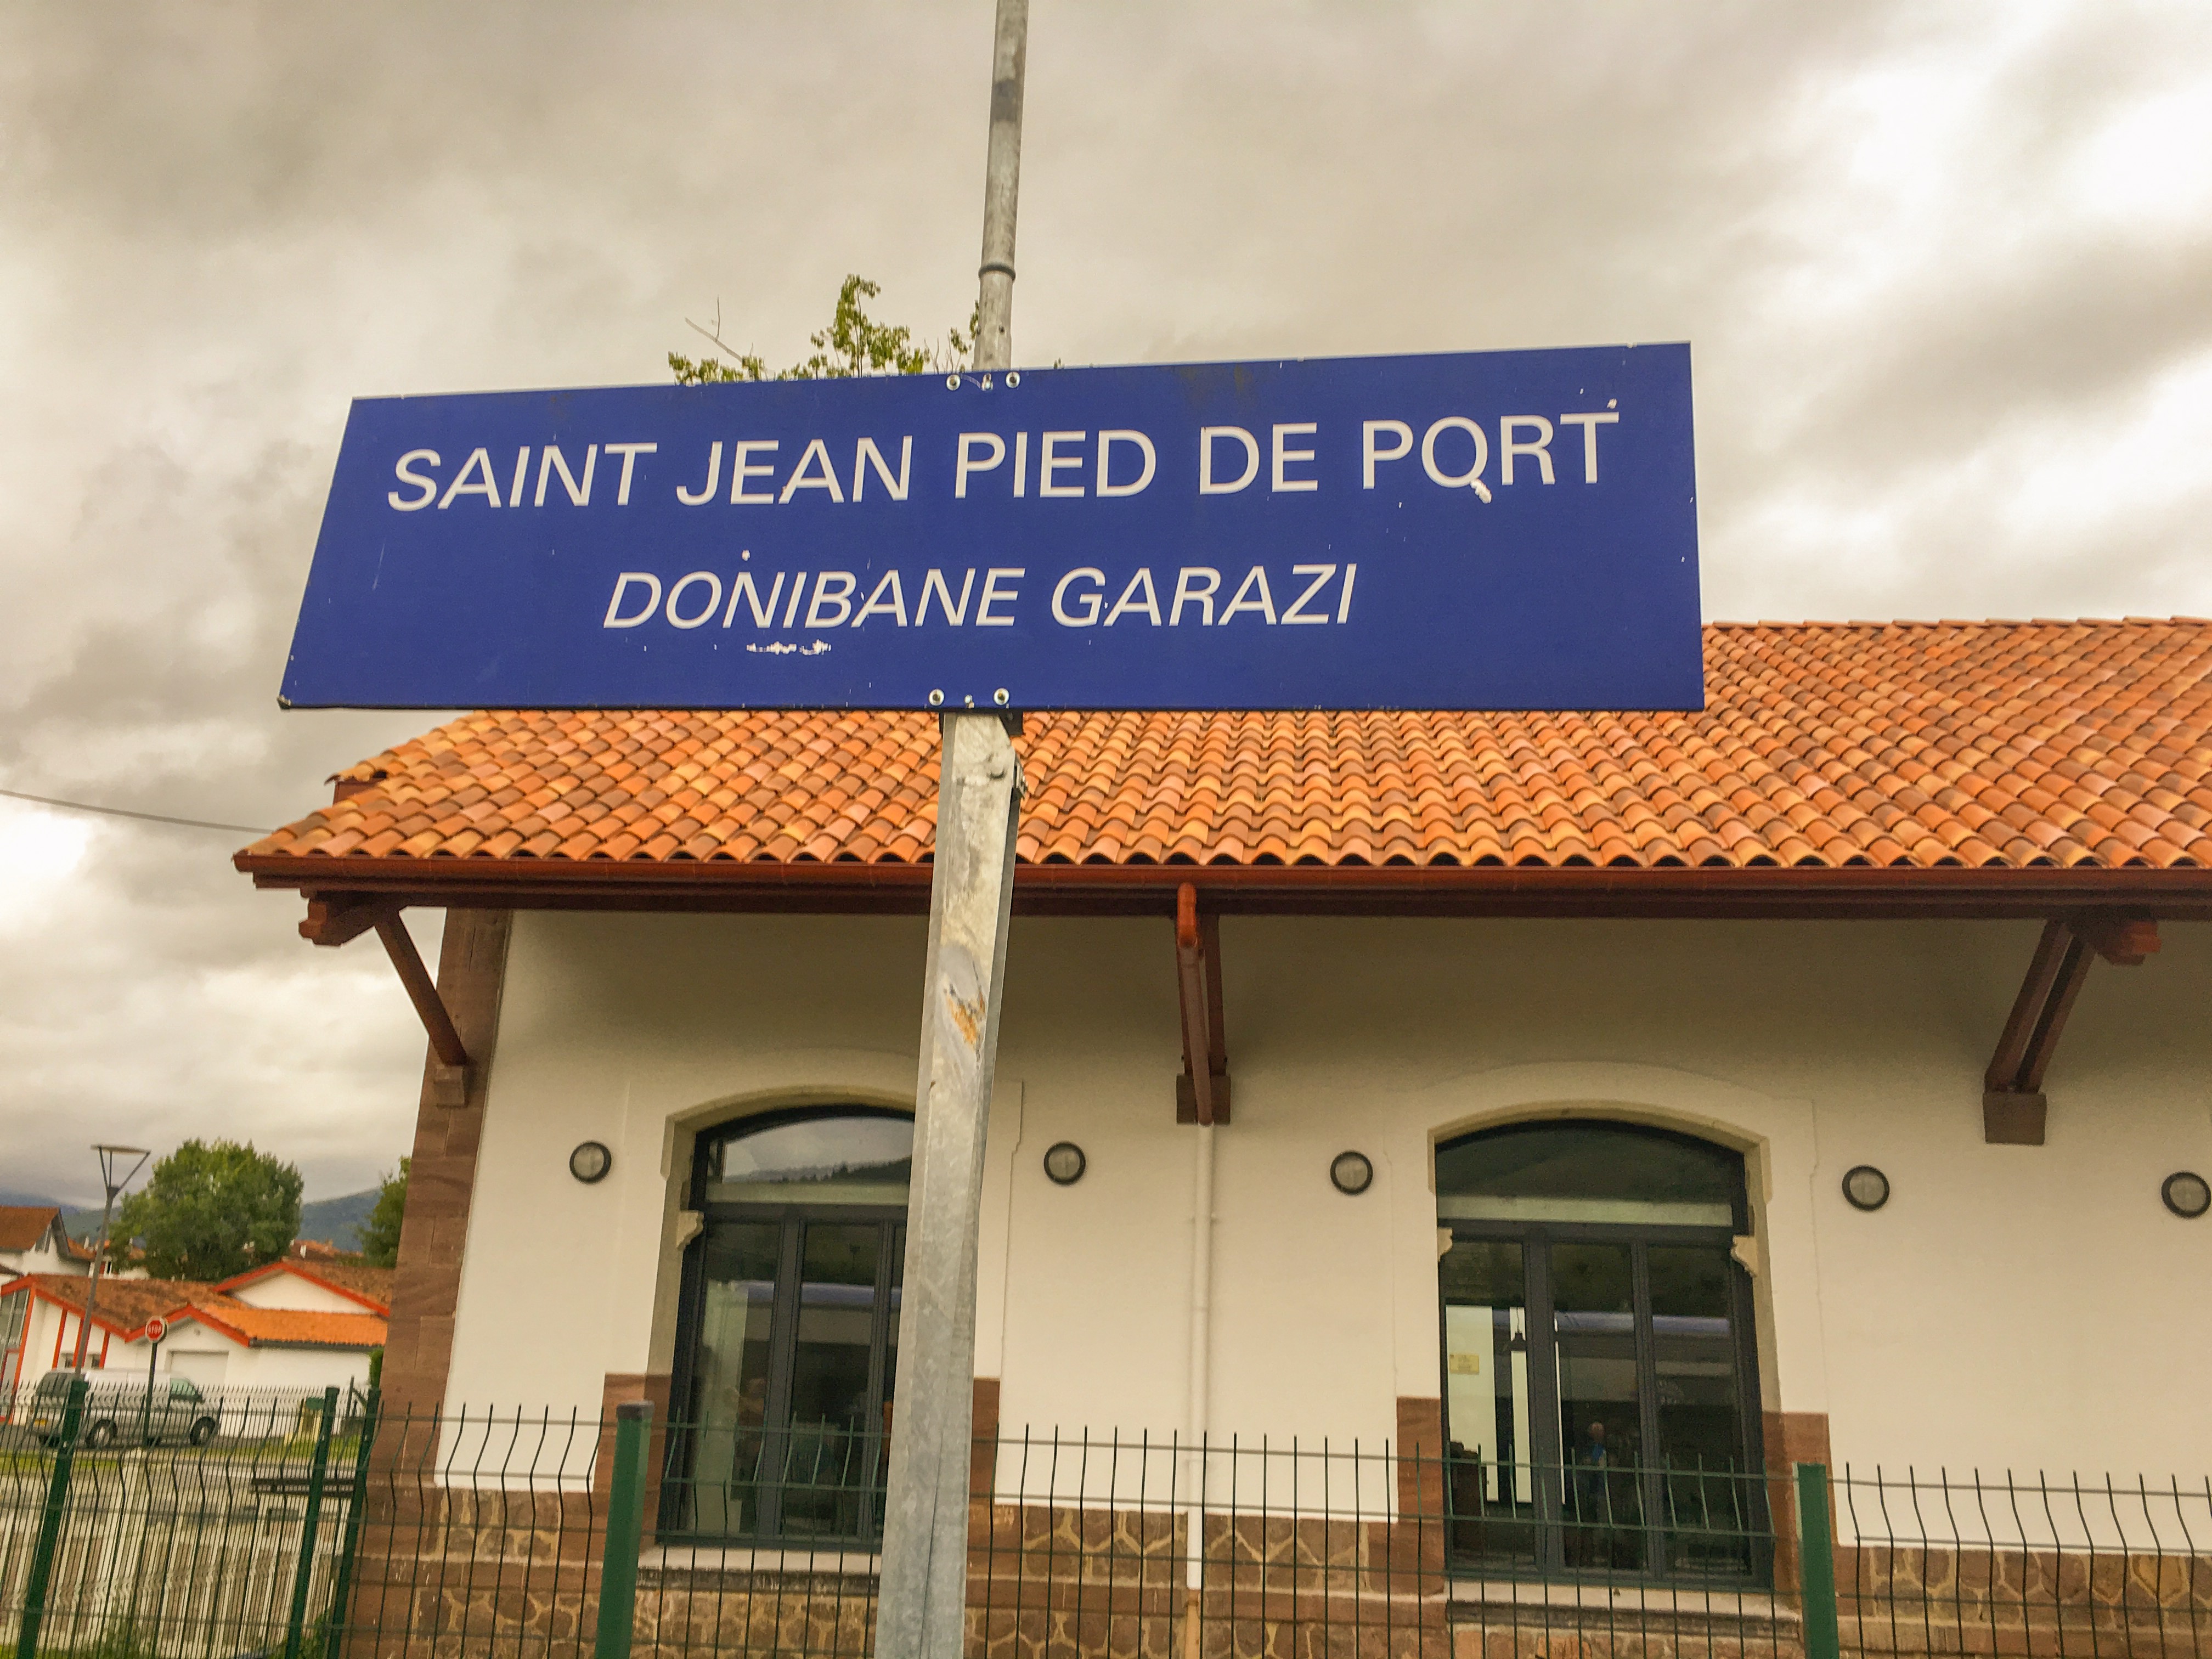 Paris to St Jean Pied de Port